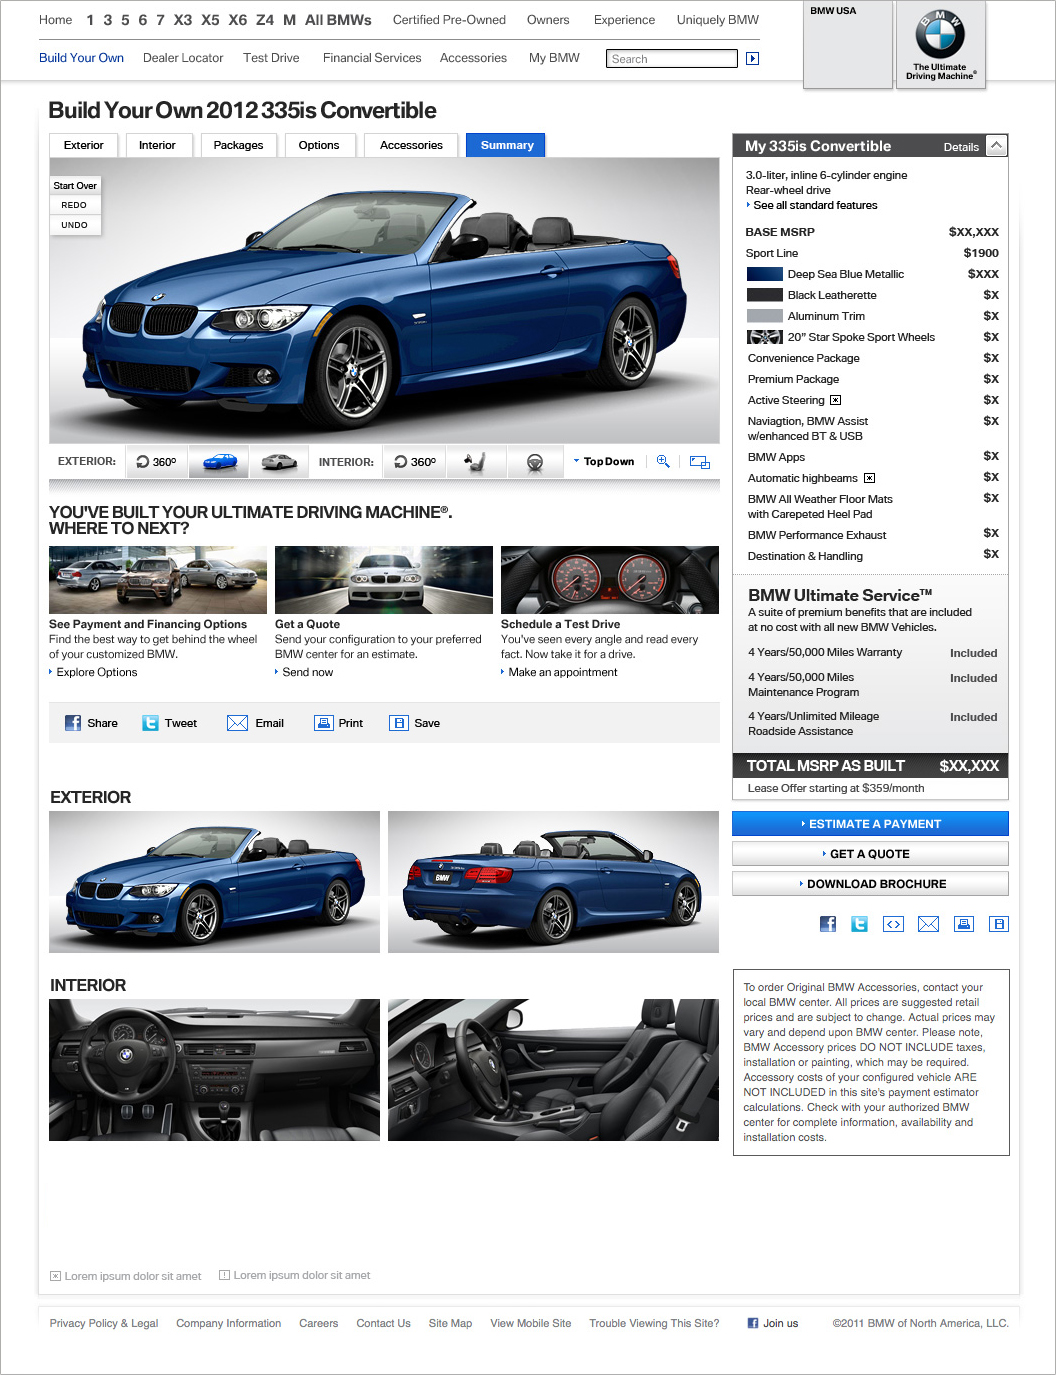 BMWusa.com